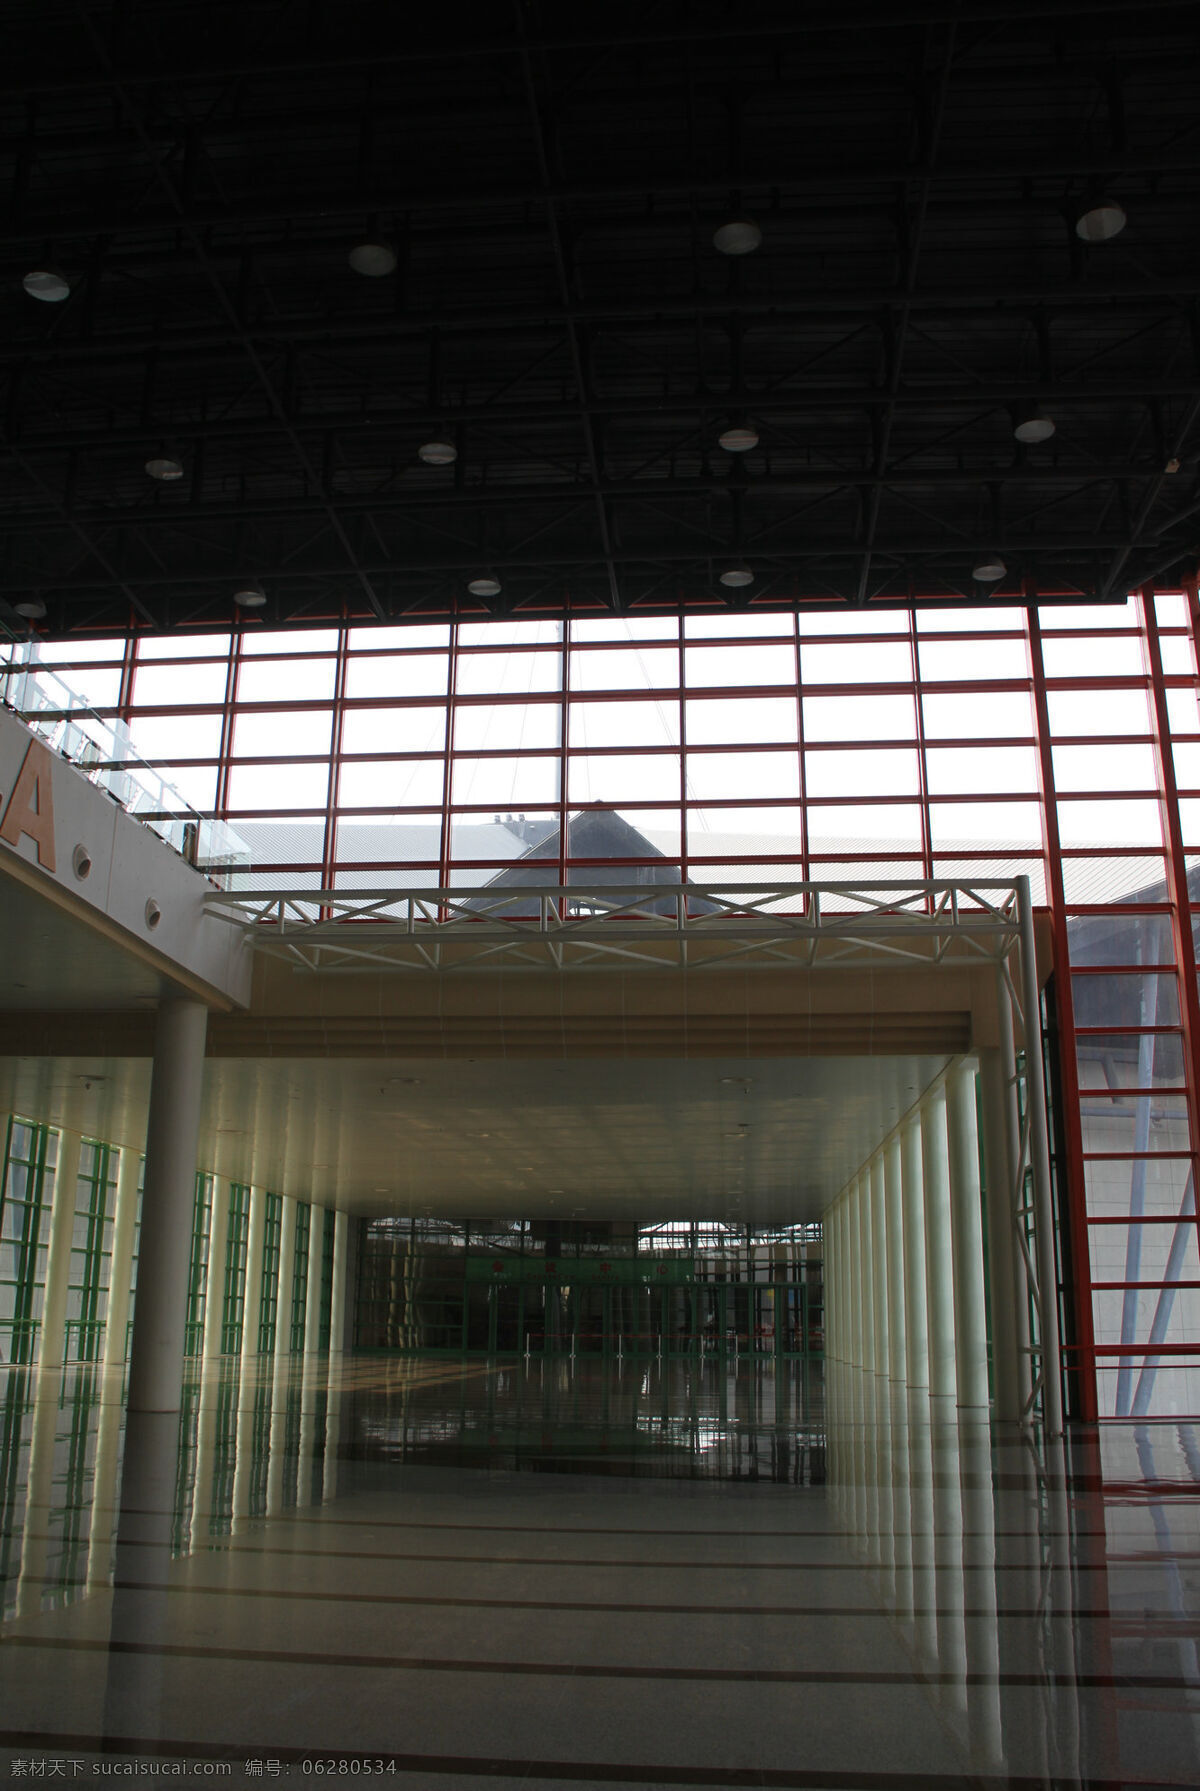 郑州 国际 会展中心 玻璃窗 红色 建筑园林 落地窗 室内 室内摄影 展览馆 内部 一览 装饰素材 展示设计